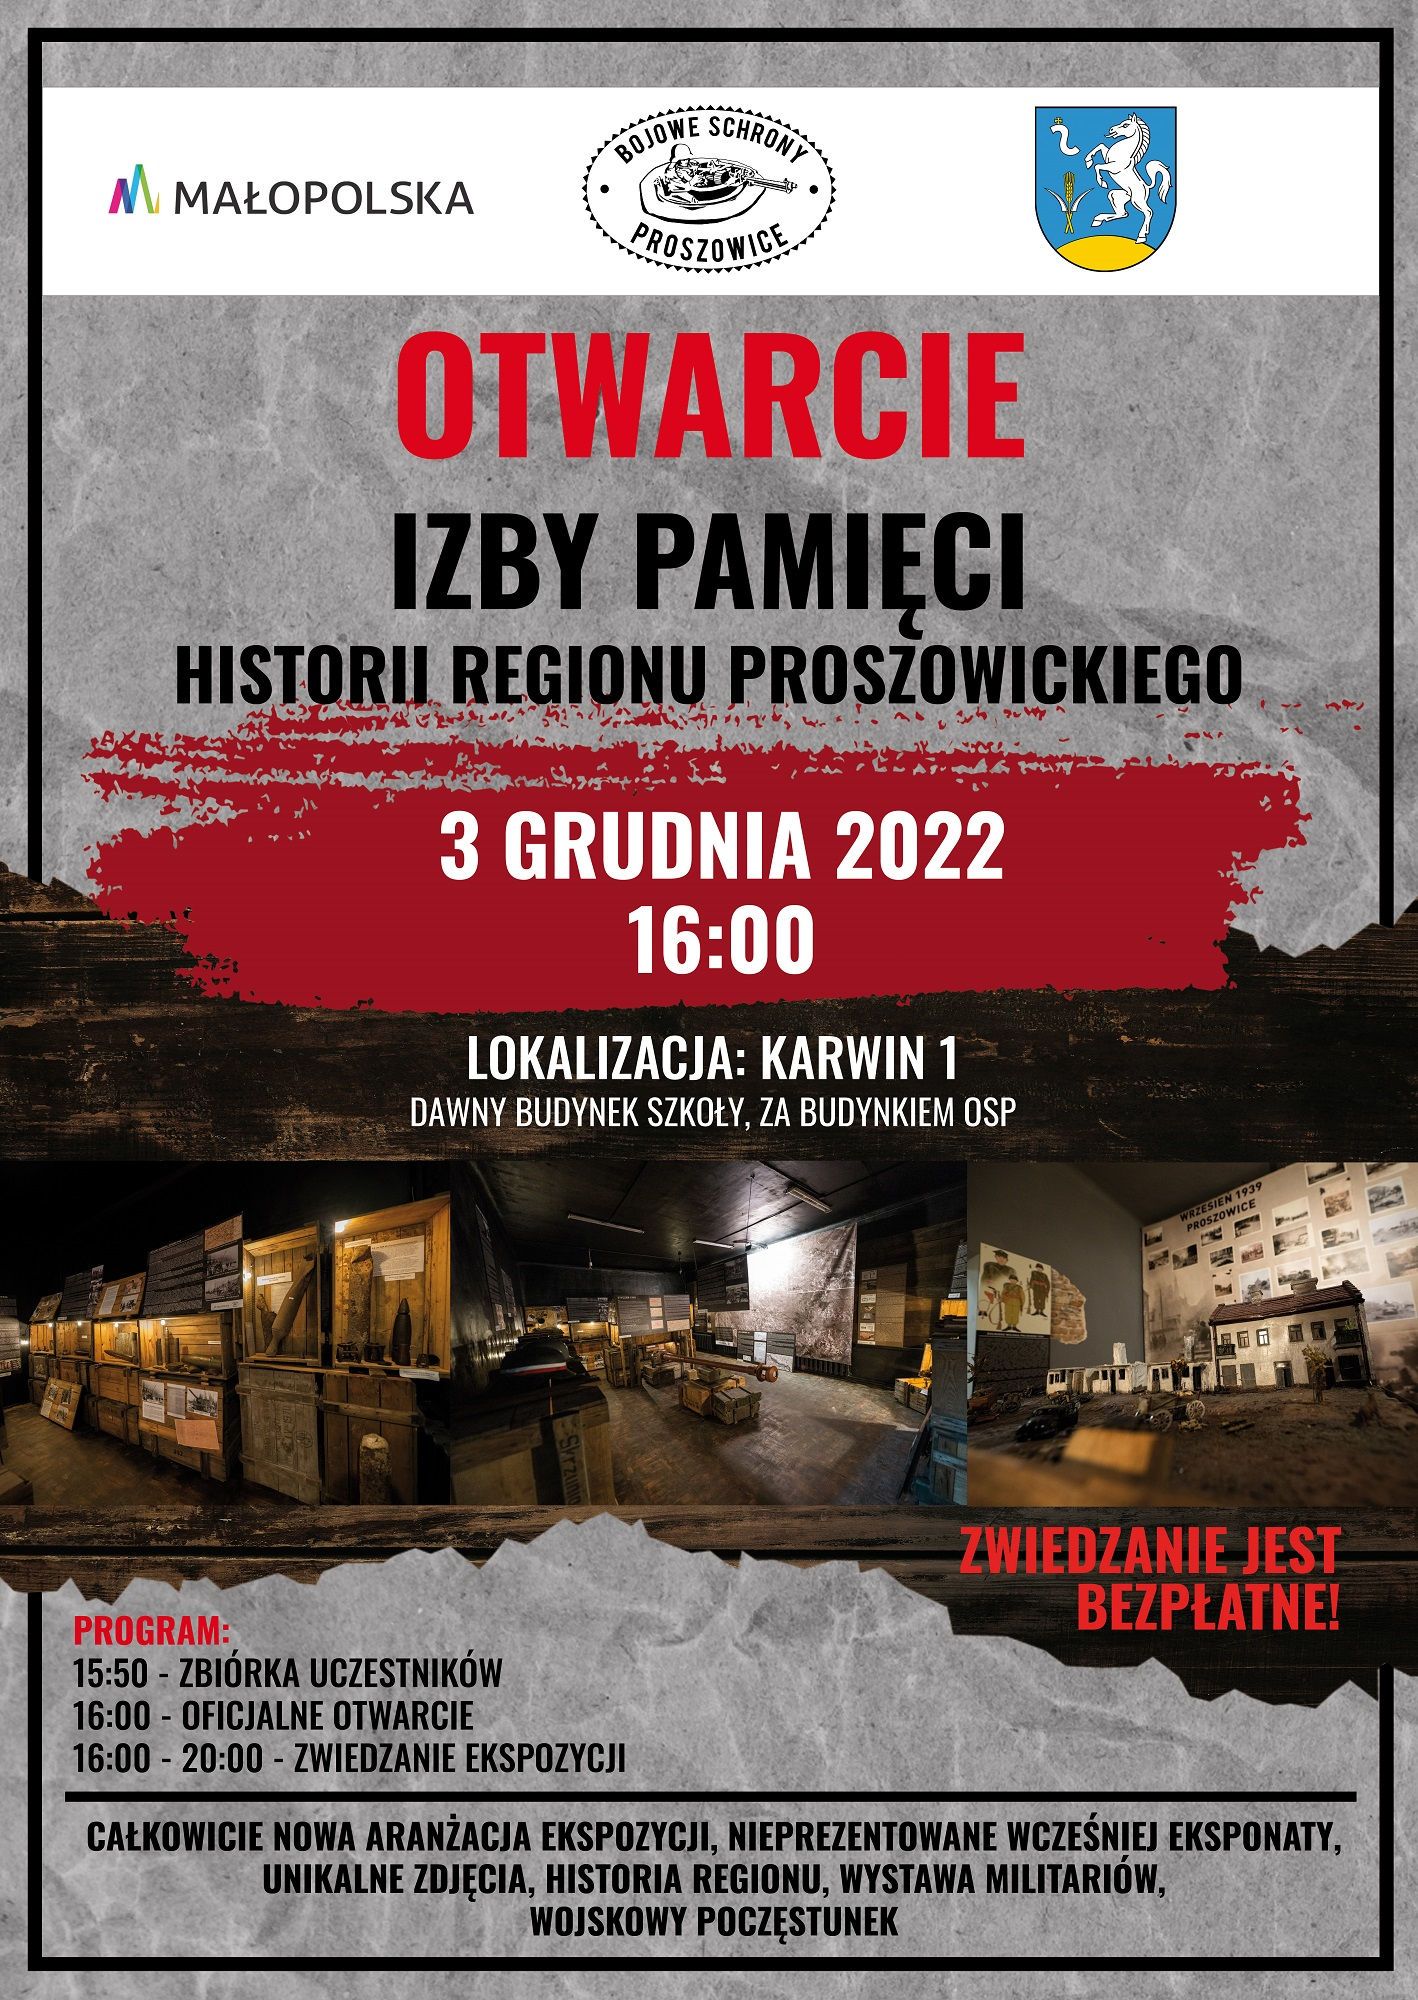 Plakat promujący otwarcie Izby Pamięci Regionu Proszowickiego w Karwinie.